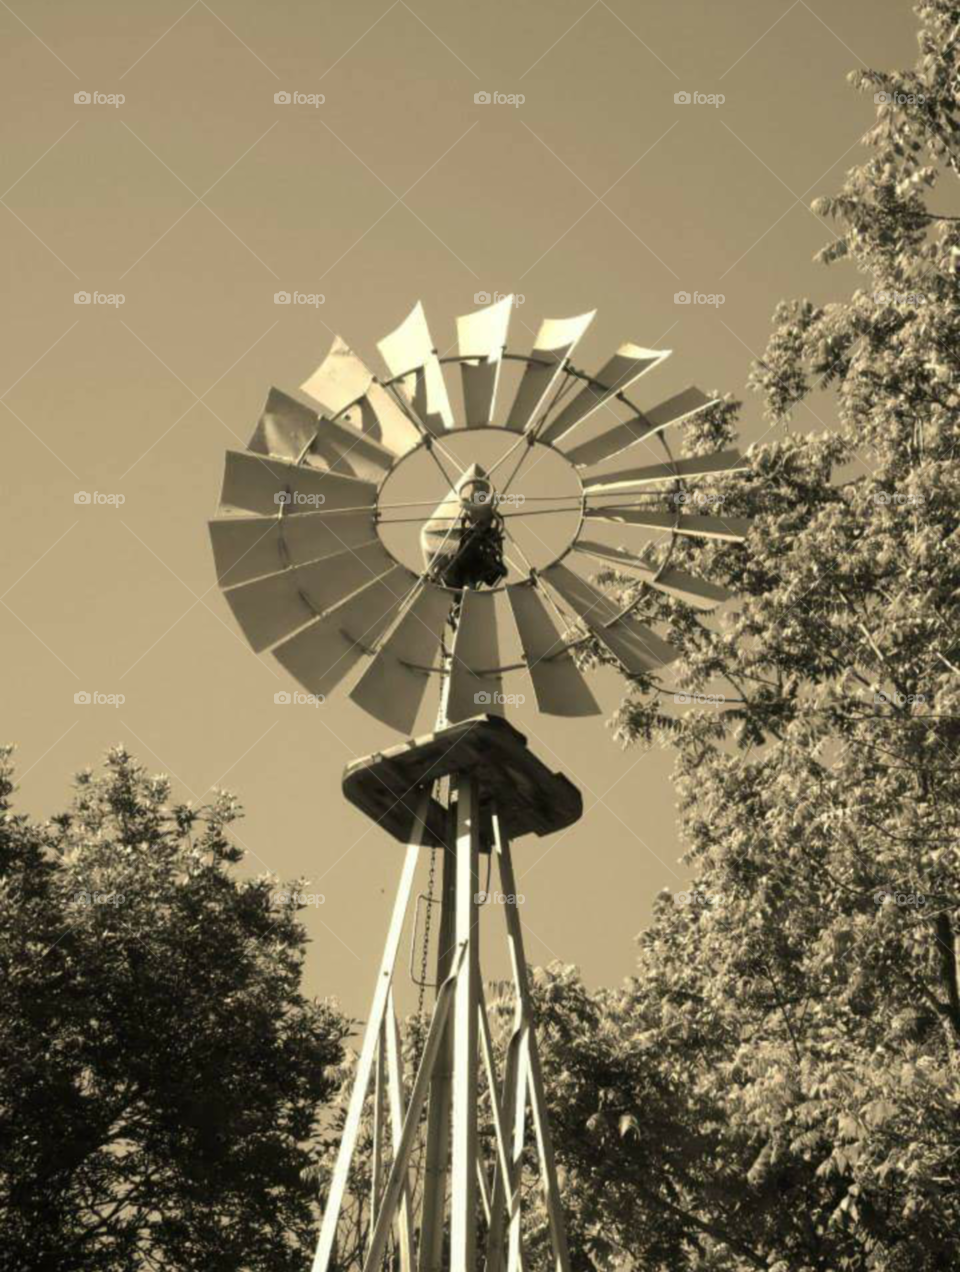 Windmill. Taken in Rogersville, TN.